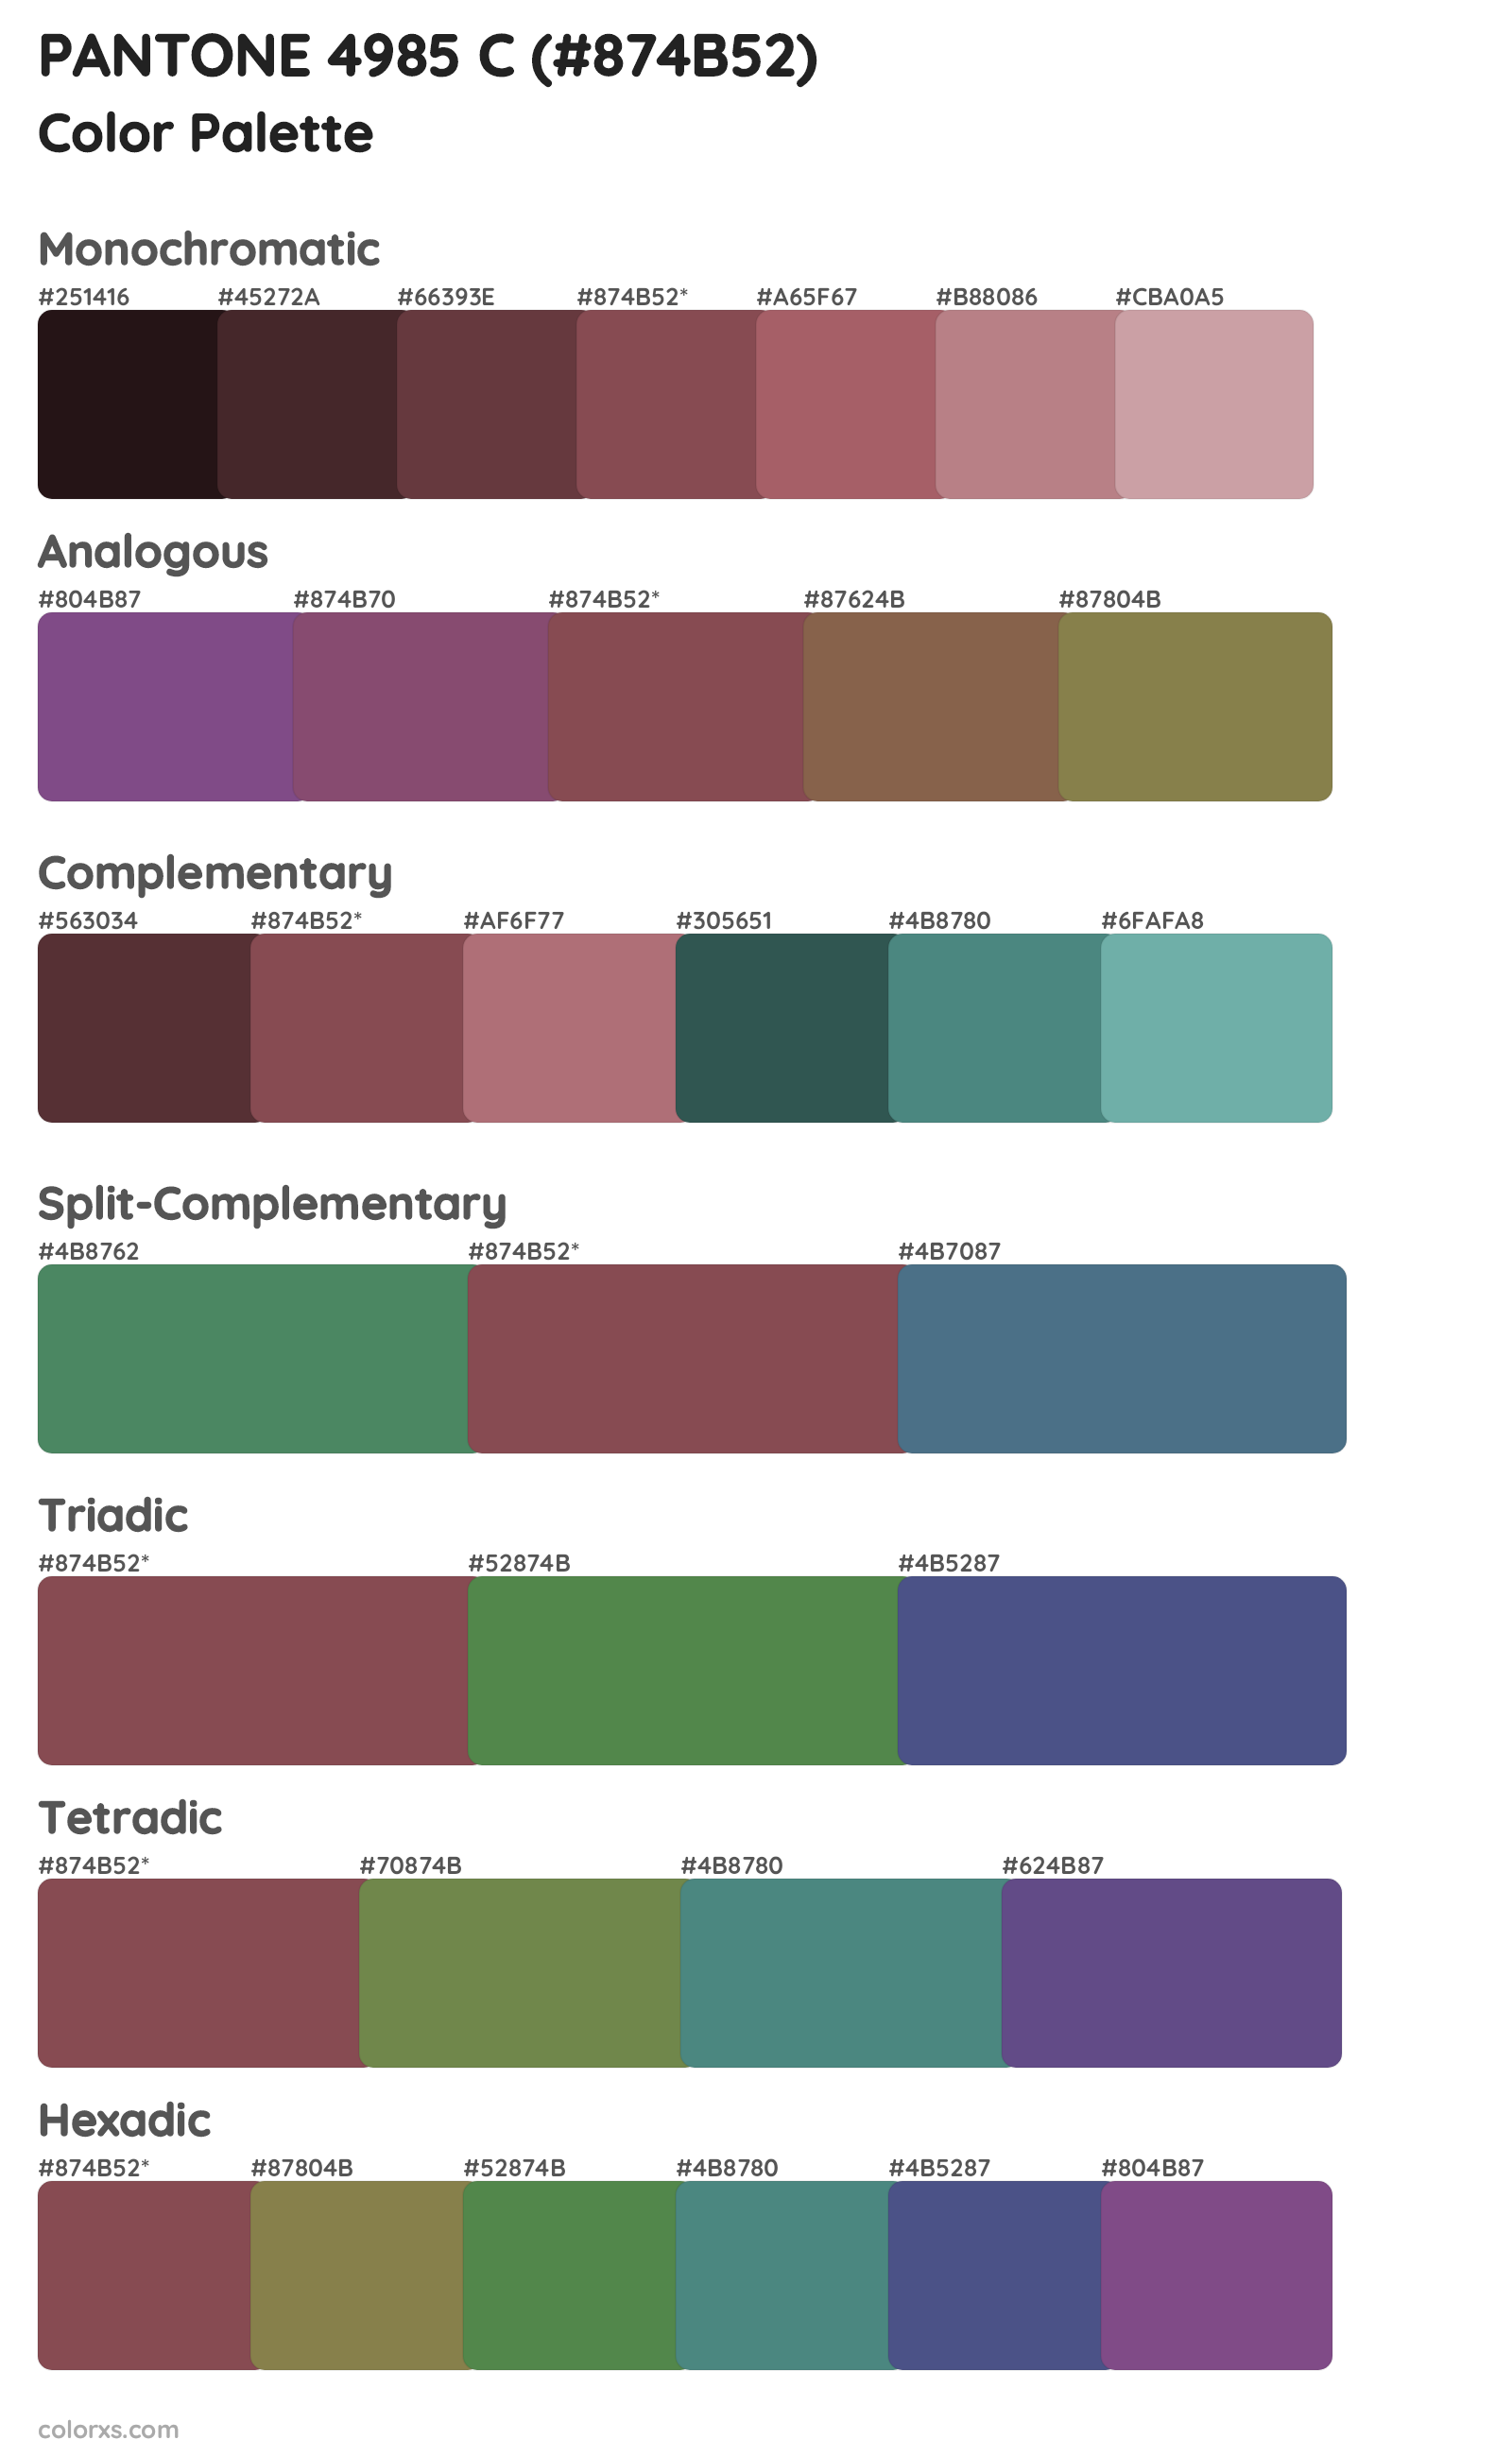 PANTONE 4985 C Color Scheme Palettes